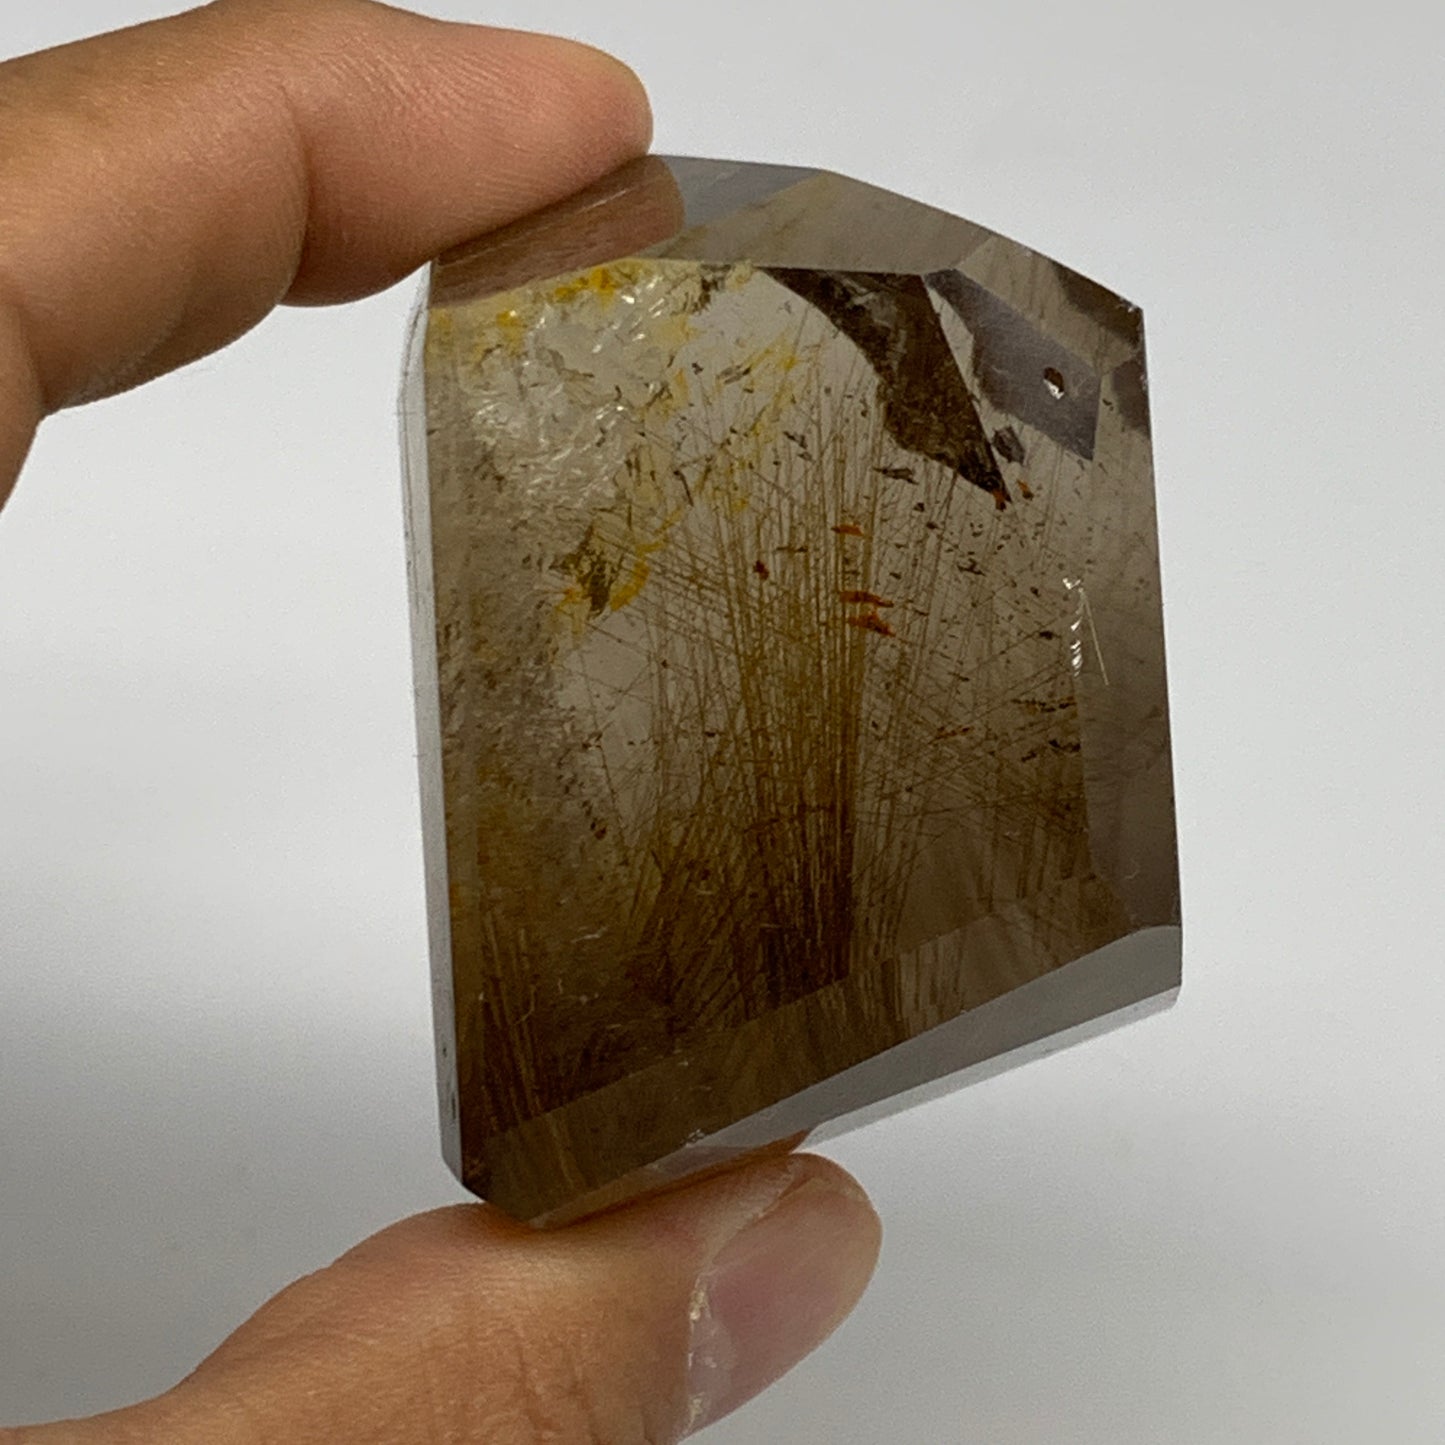 123.2g, 2"x1.4"x1.3", Natural Golden Rutile Quartz Crystal Chunk from Brazil , B